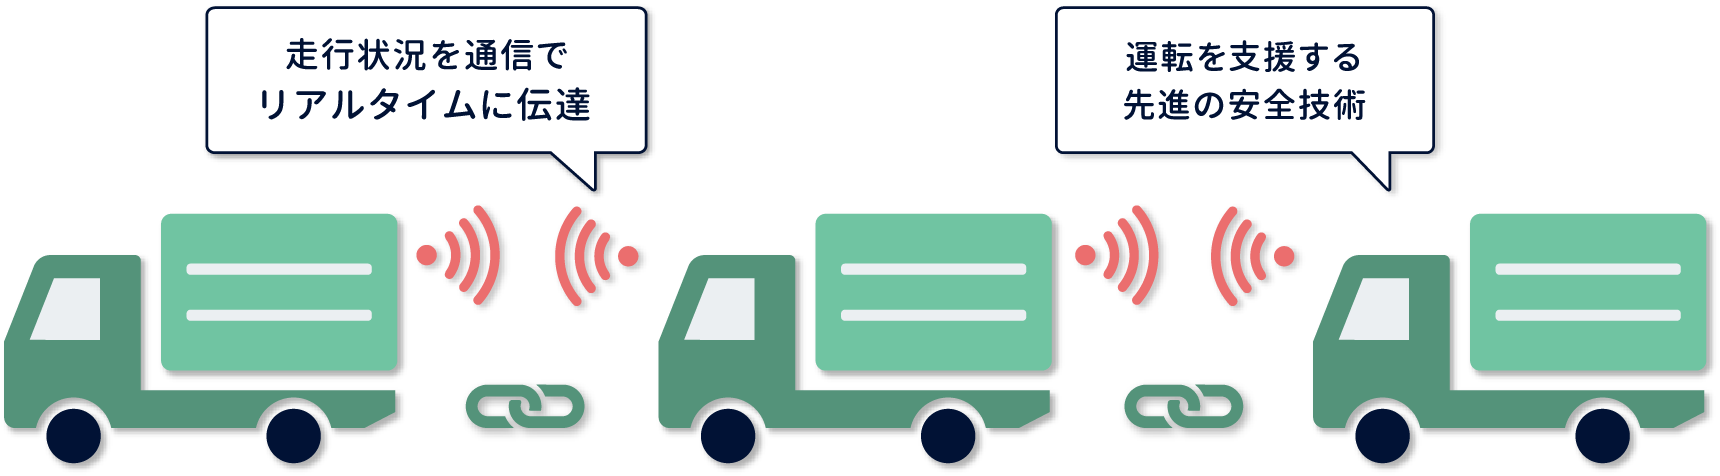 トラック隊列走行は さらに安全で便利なトラック輸送の未来をつくる取り組みです Jama 一般社団法人日本自動車工業会